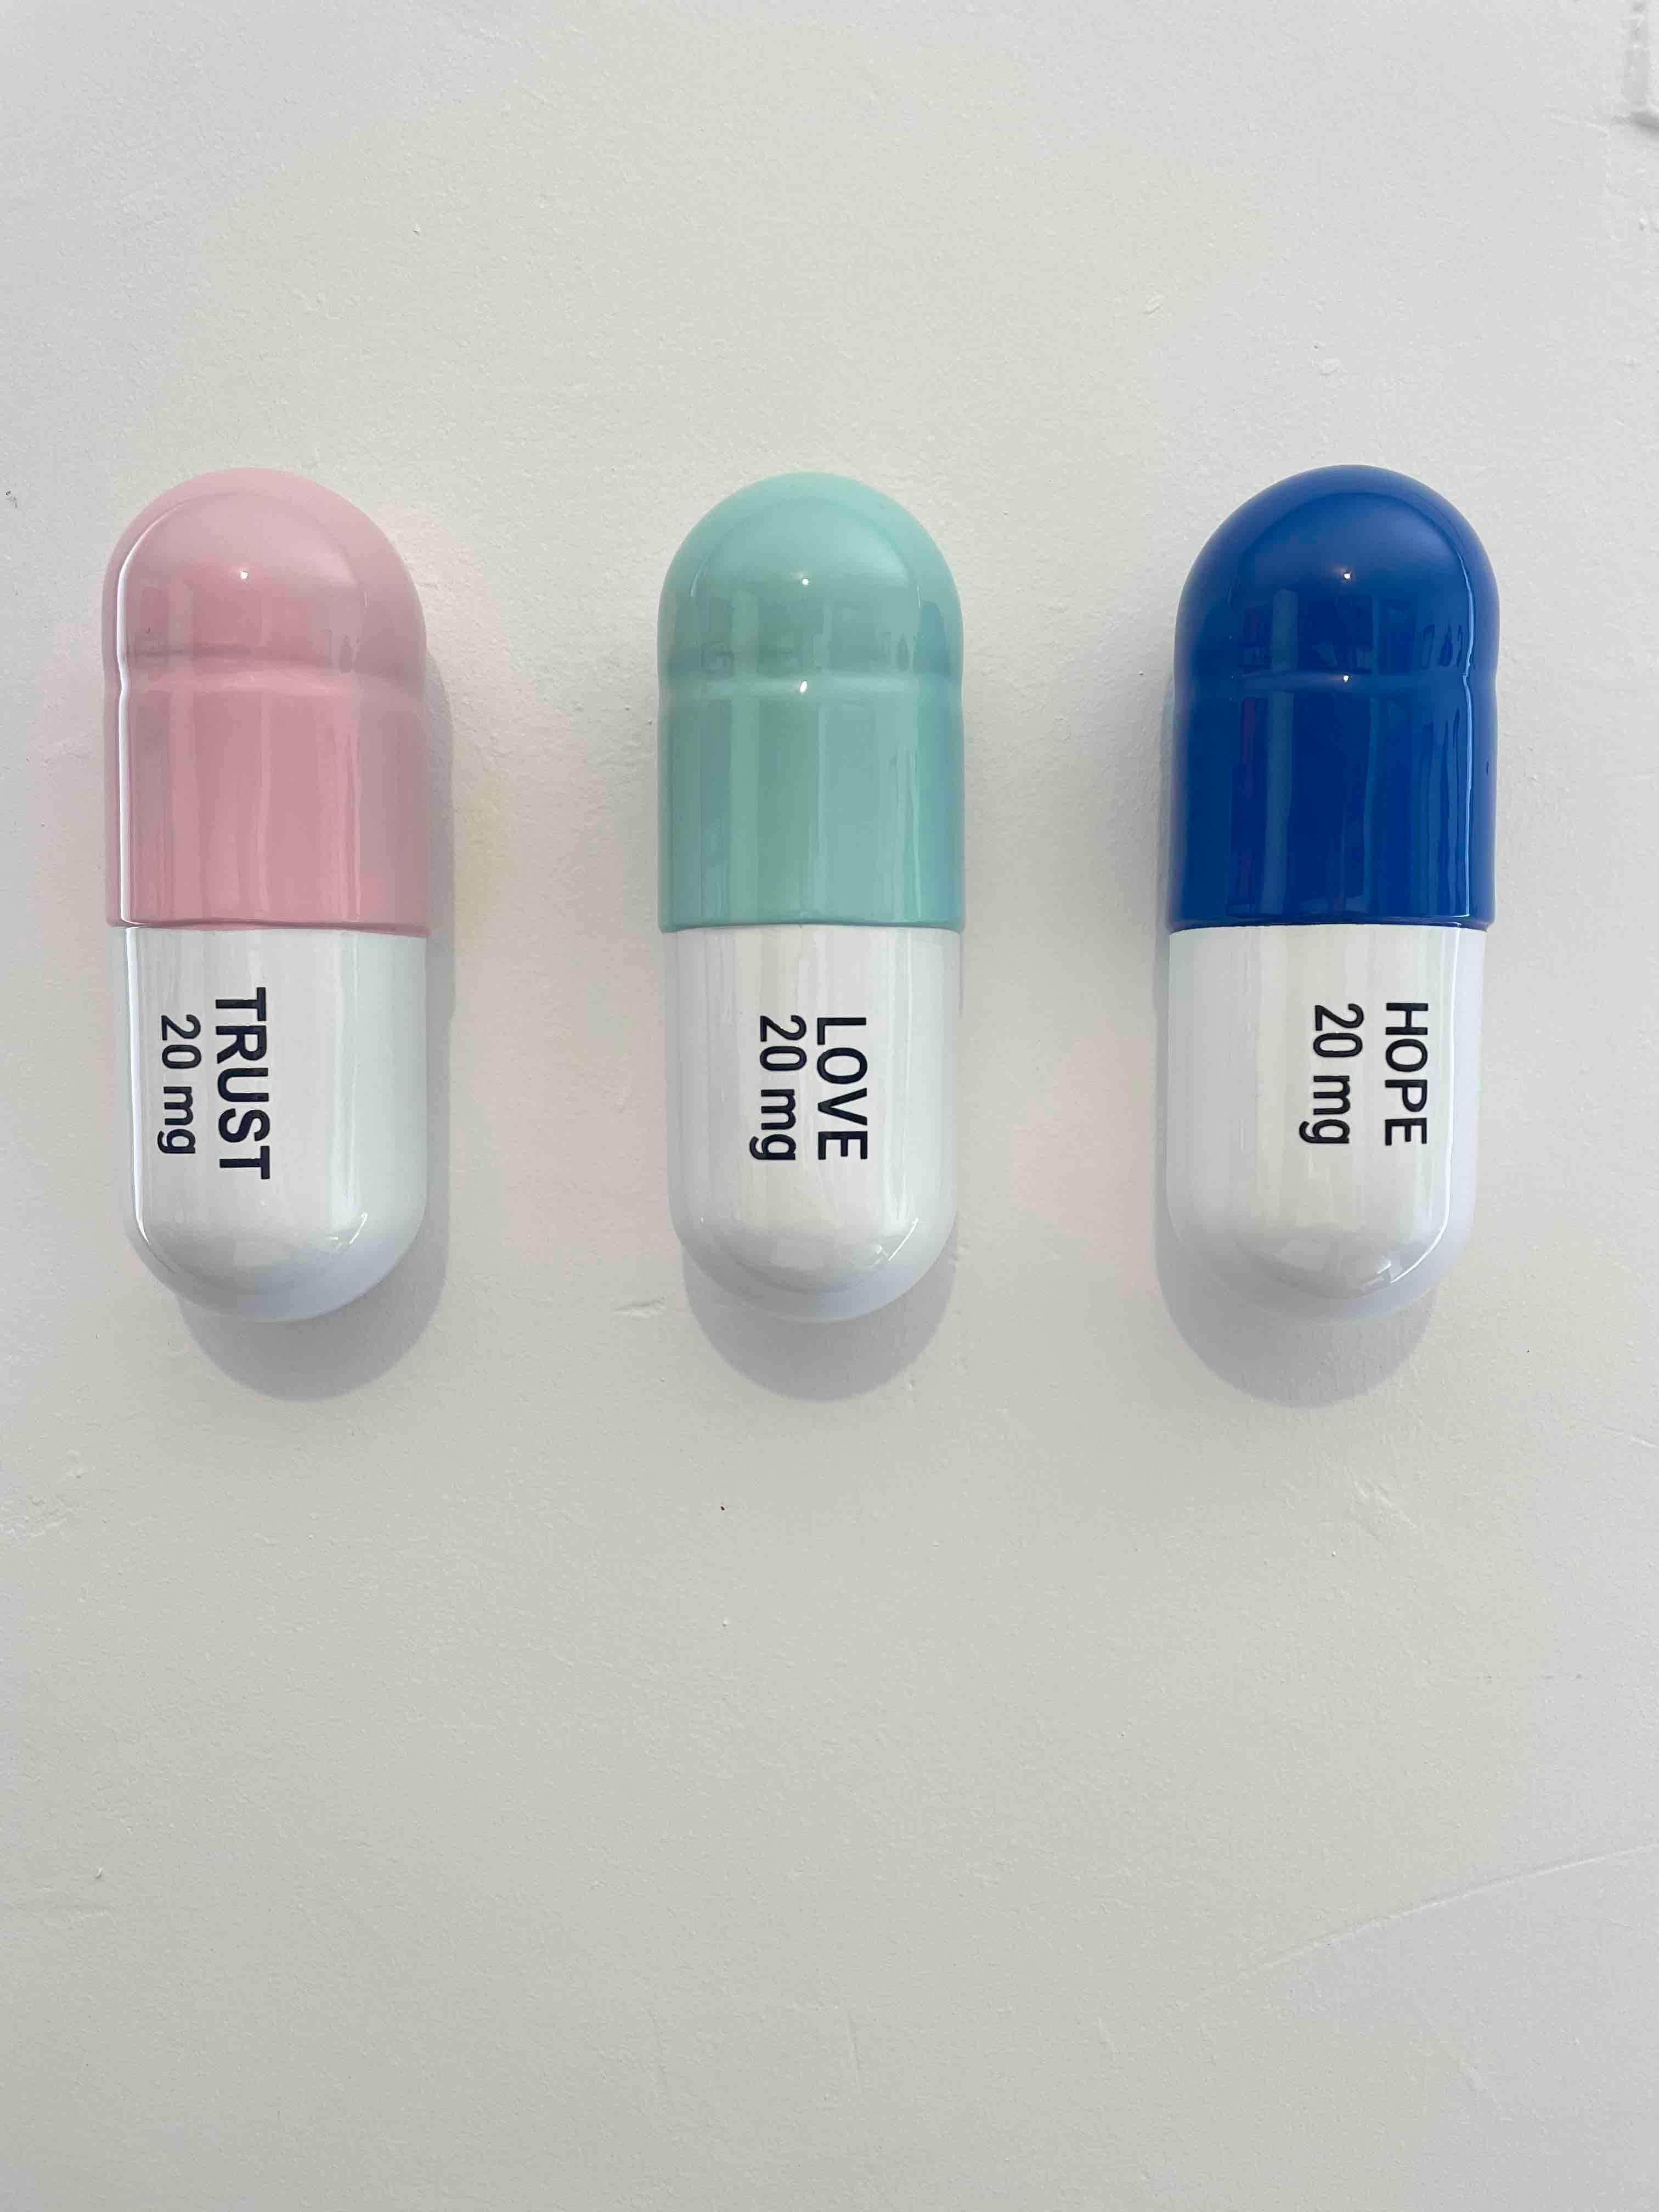 Tal Nehoray Still-Life Sculpture - 20 MG Trust, Love, Hope pill Combo (blue, mint green, light pink)  pop sculpture